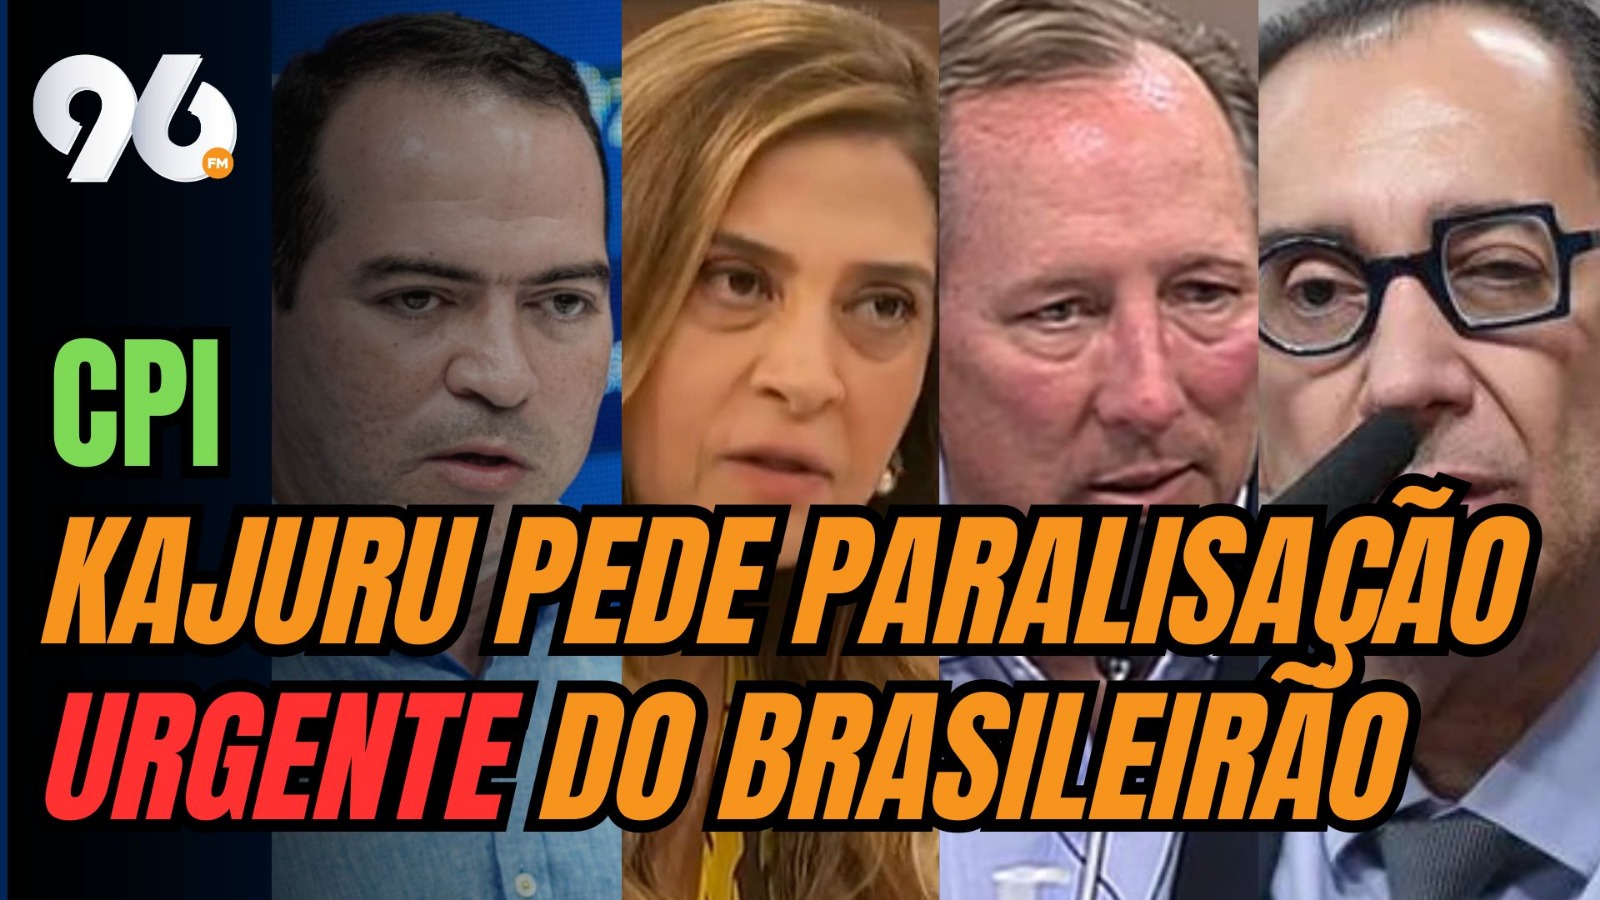 [VIDEO] Escândalo do VAR pode provocar paralisação "urgente" do Brasileirão